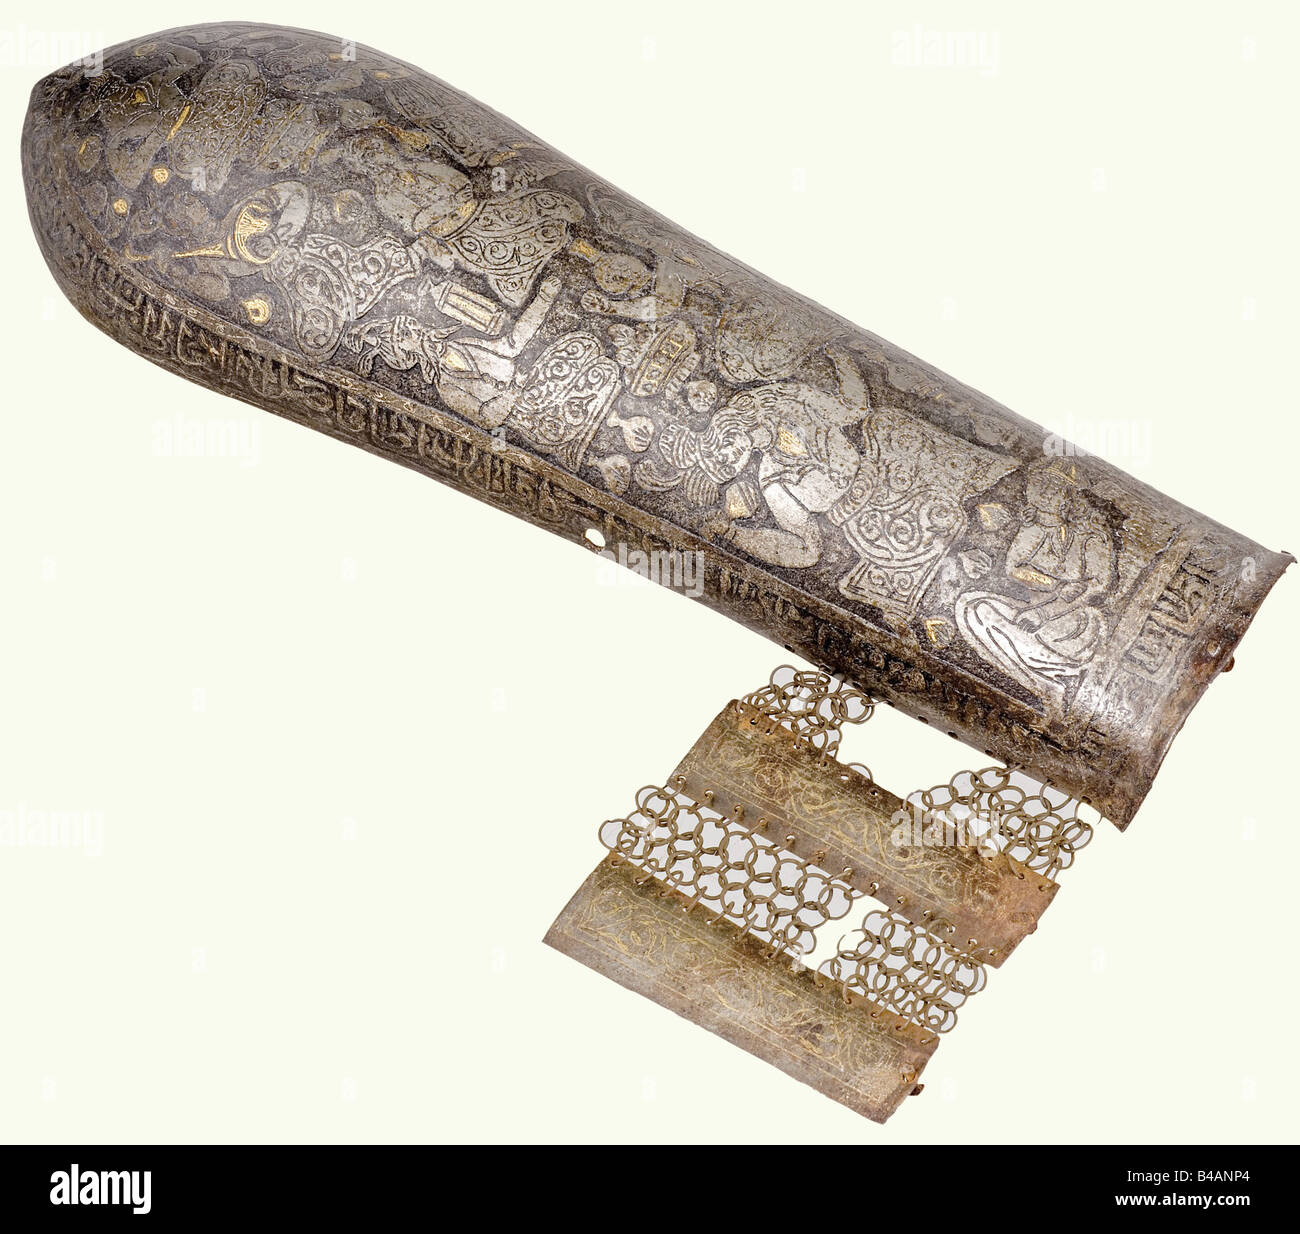 Un groupe de kulah khud et de bazu incrustés d'or (avant-bras), persan, XIXe siècle. Crâne de fer forgé en un seul morceau avec la surface complètement couverte de la figure humaine gravée décoration avec des restes d'incrustations d'or. La pointe quadriculaire peut être dévissée. Il y a une prise nasale réglable et deux prises de panache latérales. Une inscription s'inscrit le long du bord, et des rideaux de courrier suspendus de bagues en fer joints par flexion (défauts minimaux). Hauteur env. 61 cm. Le bras de protection correspondant est gravé et incrusté d'or avec un protège-poignet attaché (anneaux incomplets). Longueur 33,5 c, Banque D'Images